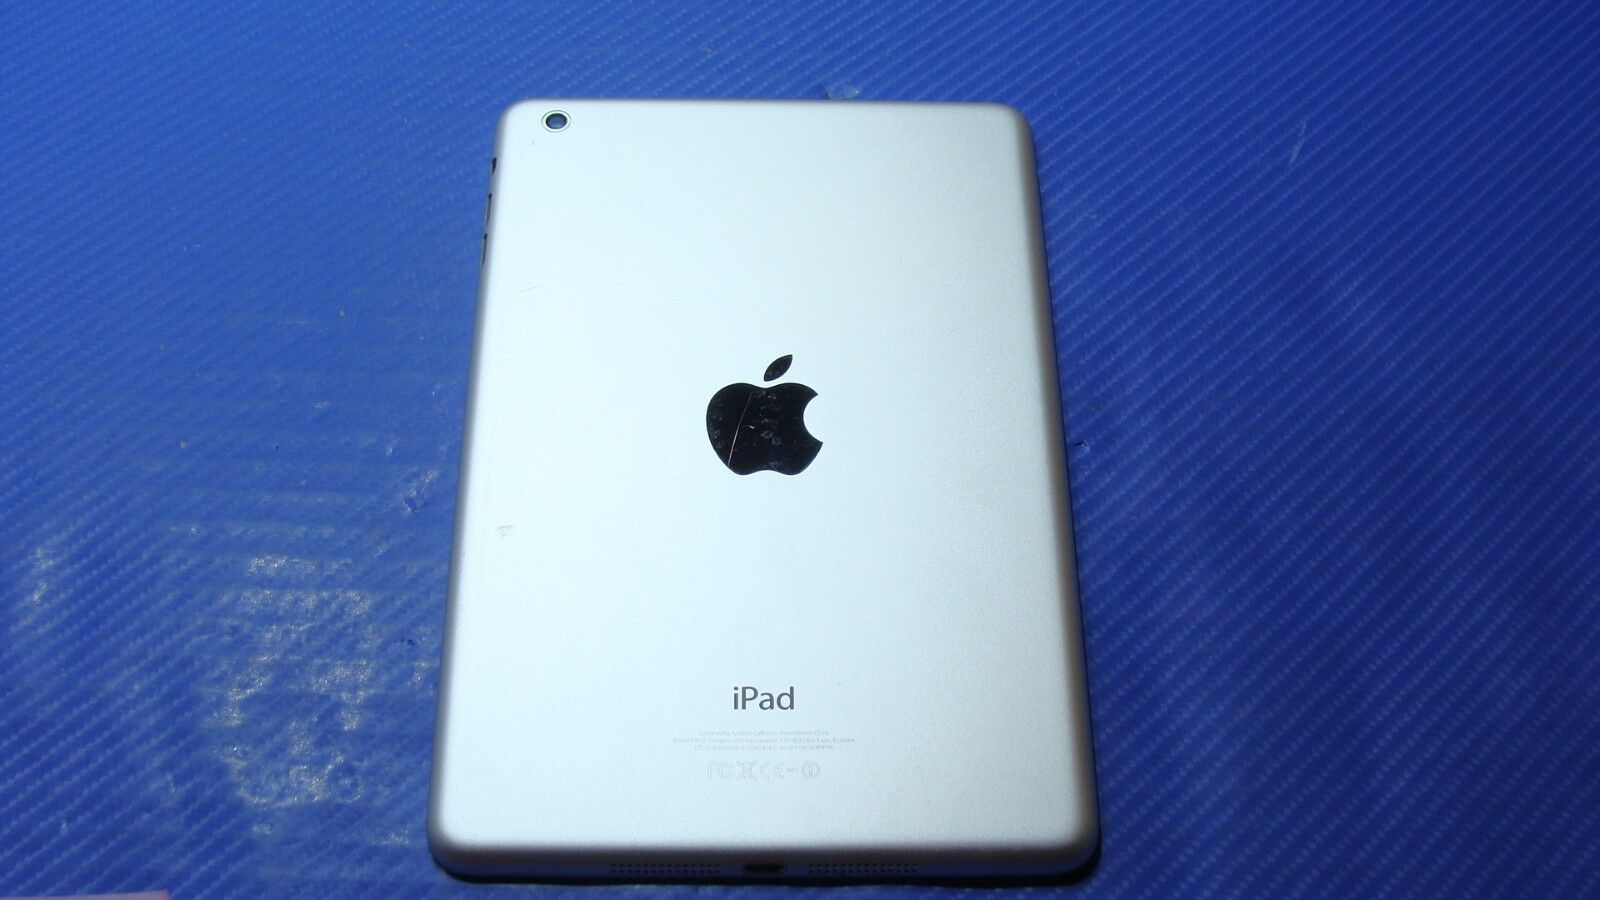 iPad Mini 16GB A1432 MD531LL/A Late 2012 7